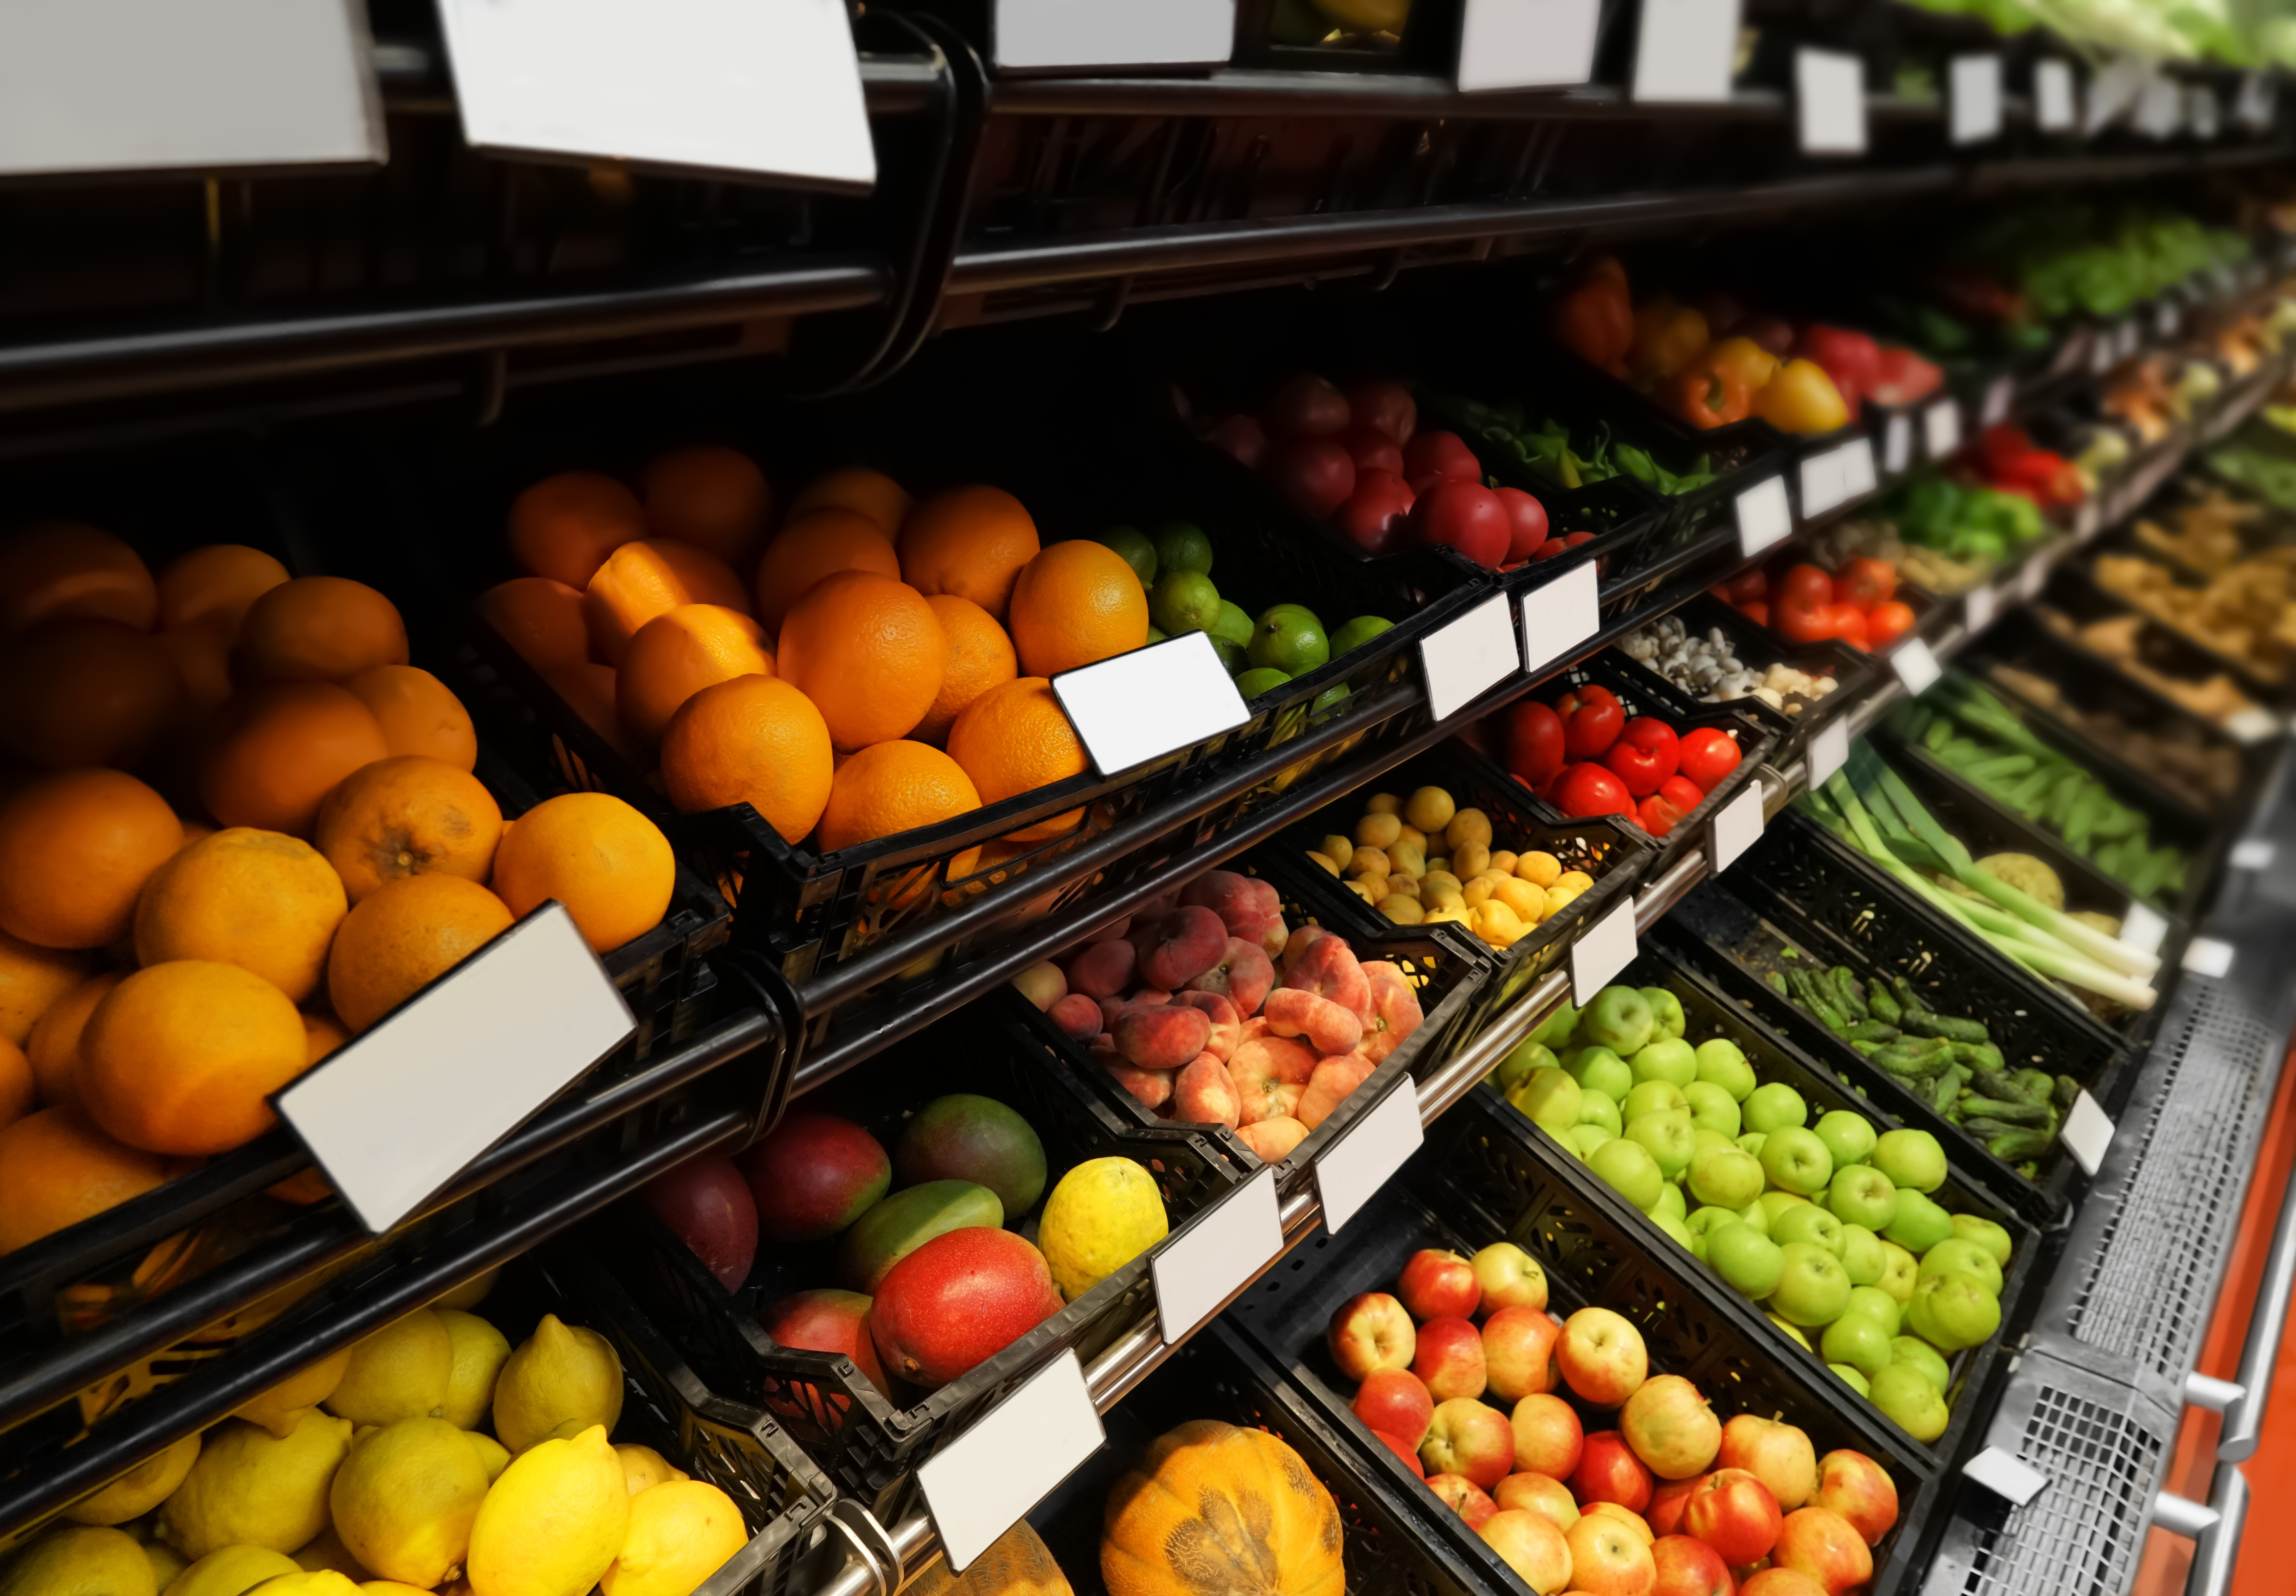 Consumer fruit and veg